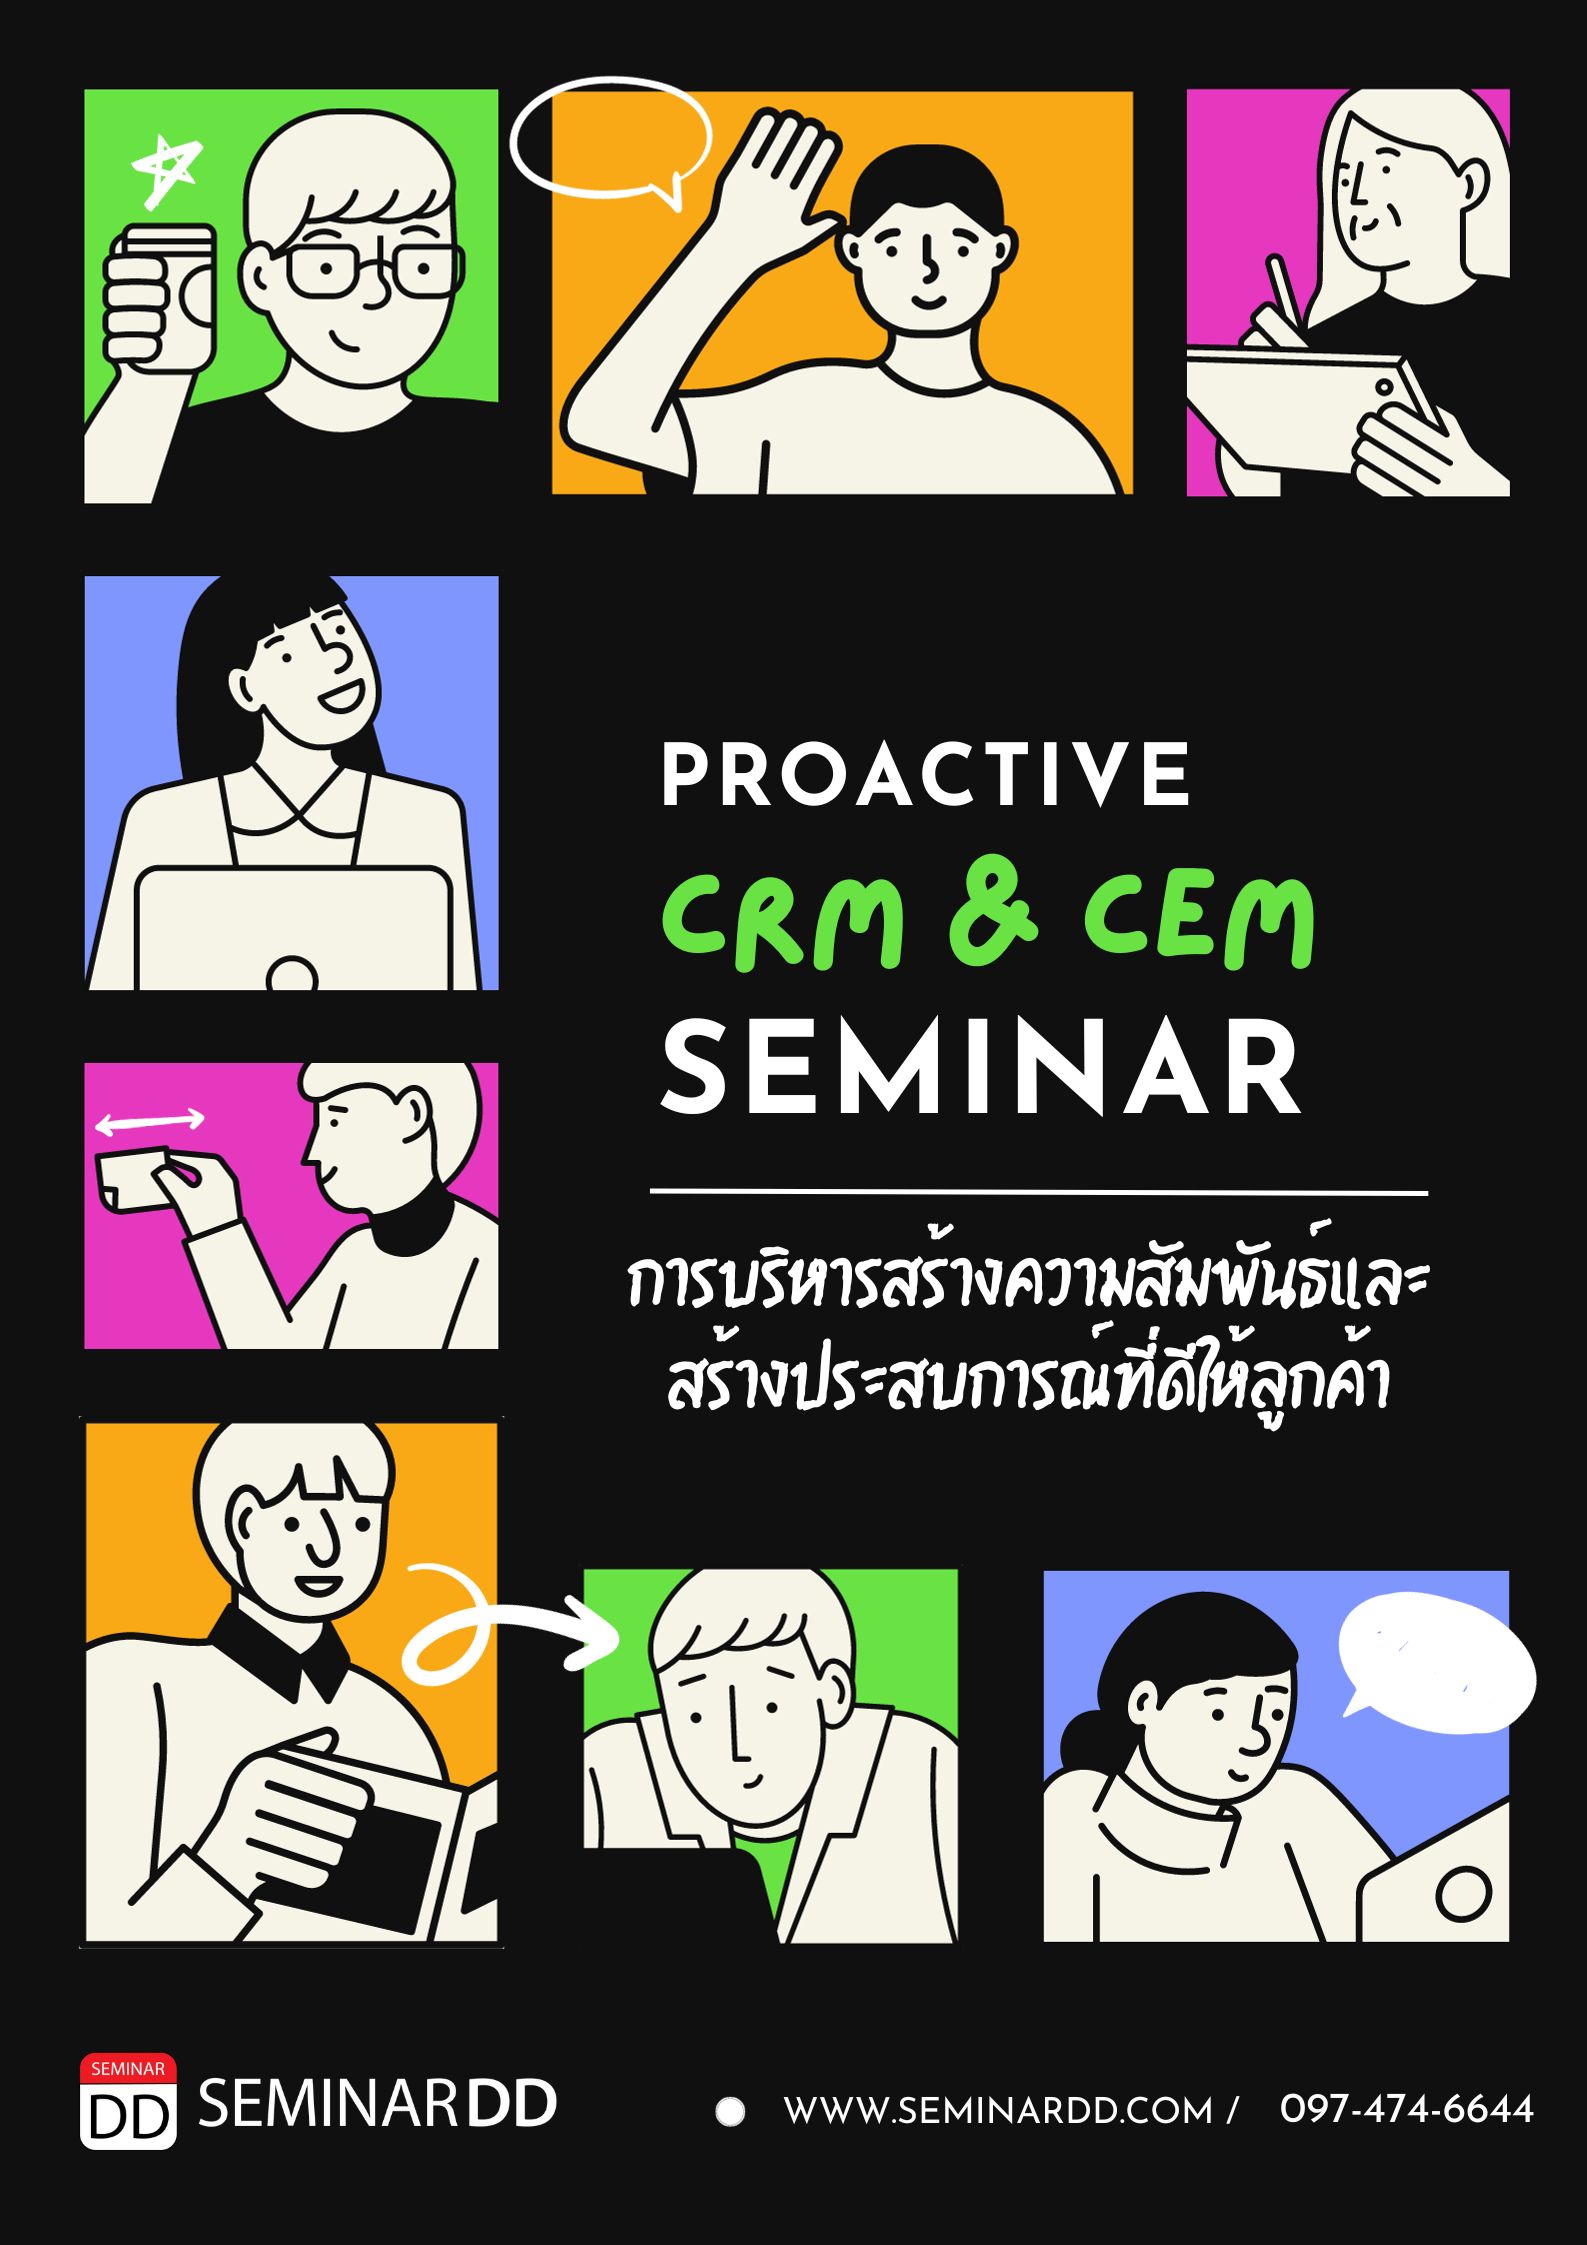 Proactive CRM & CEM การบริหารความสัมพันธ์และสร้างประสบการณ์ที่ดีให้ลูกค้า